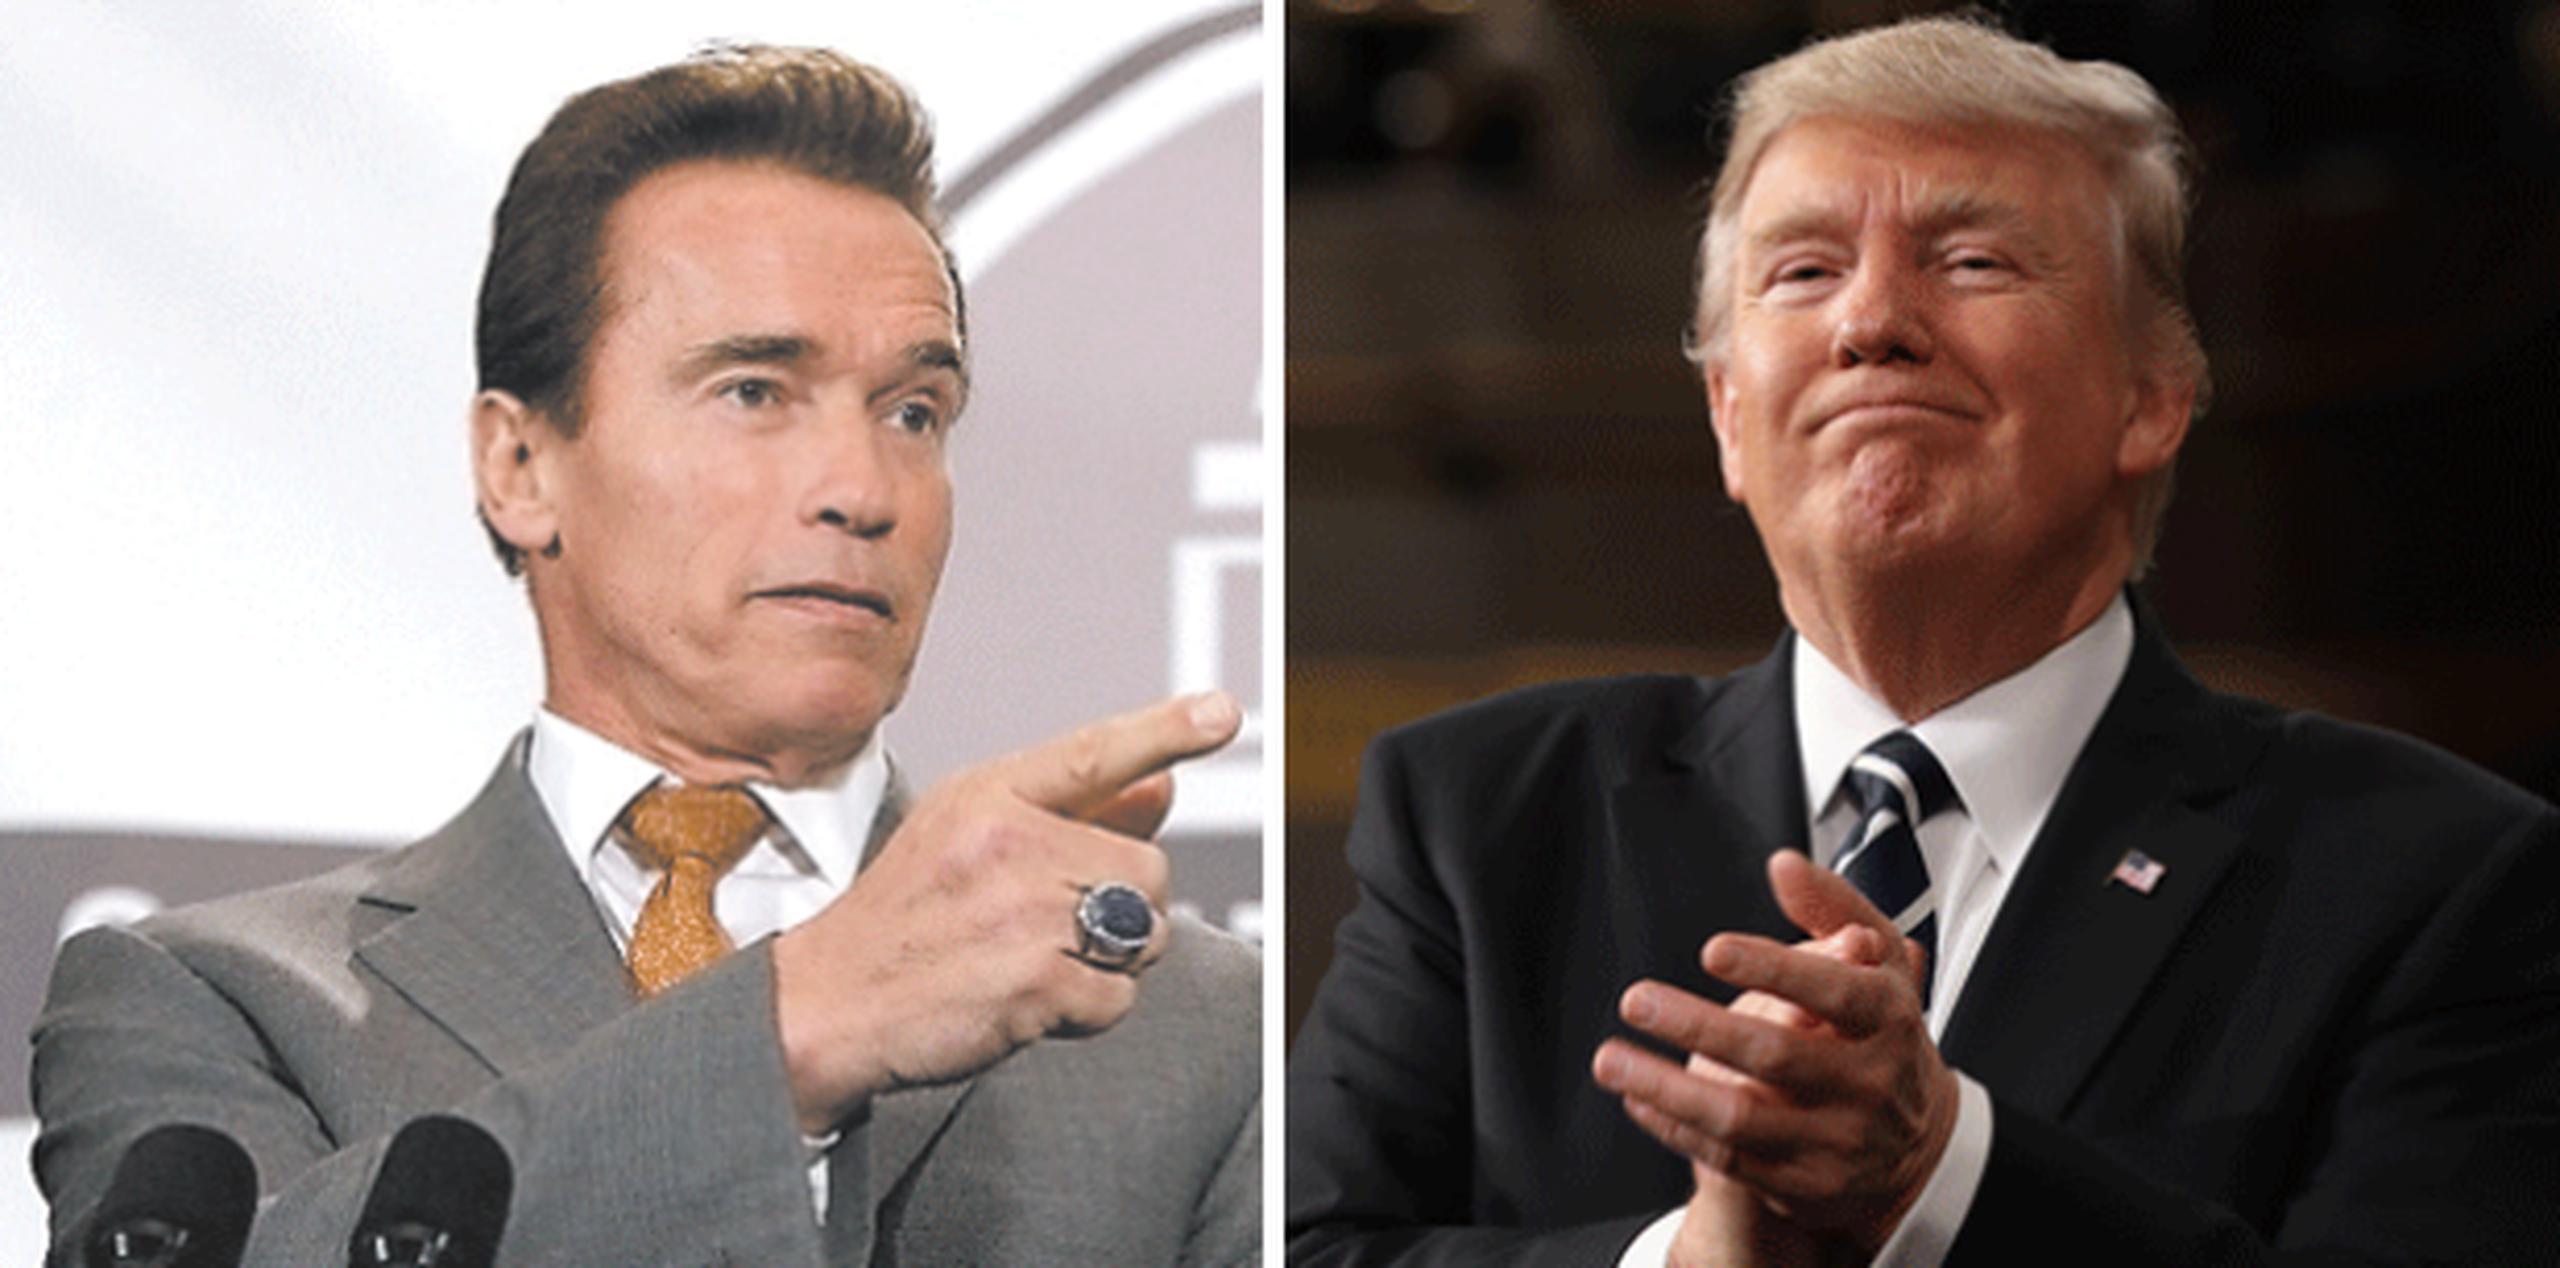 Schwarzenegger desembarcó en "The Celebrity Apprentice" este año para sustituir a Trump. (Archivo)